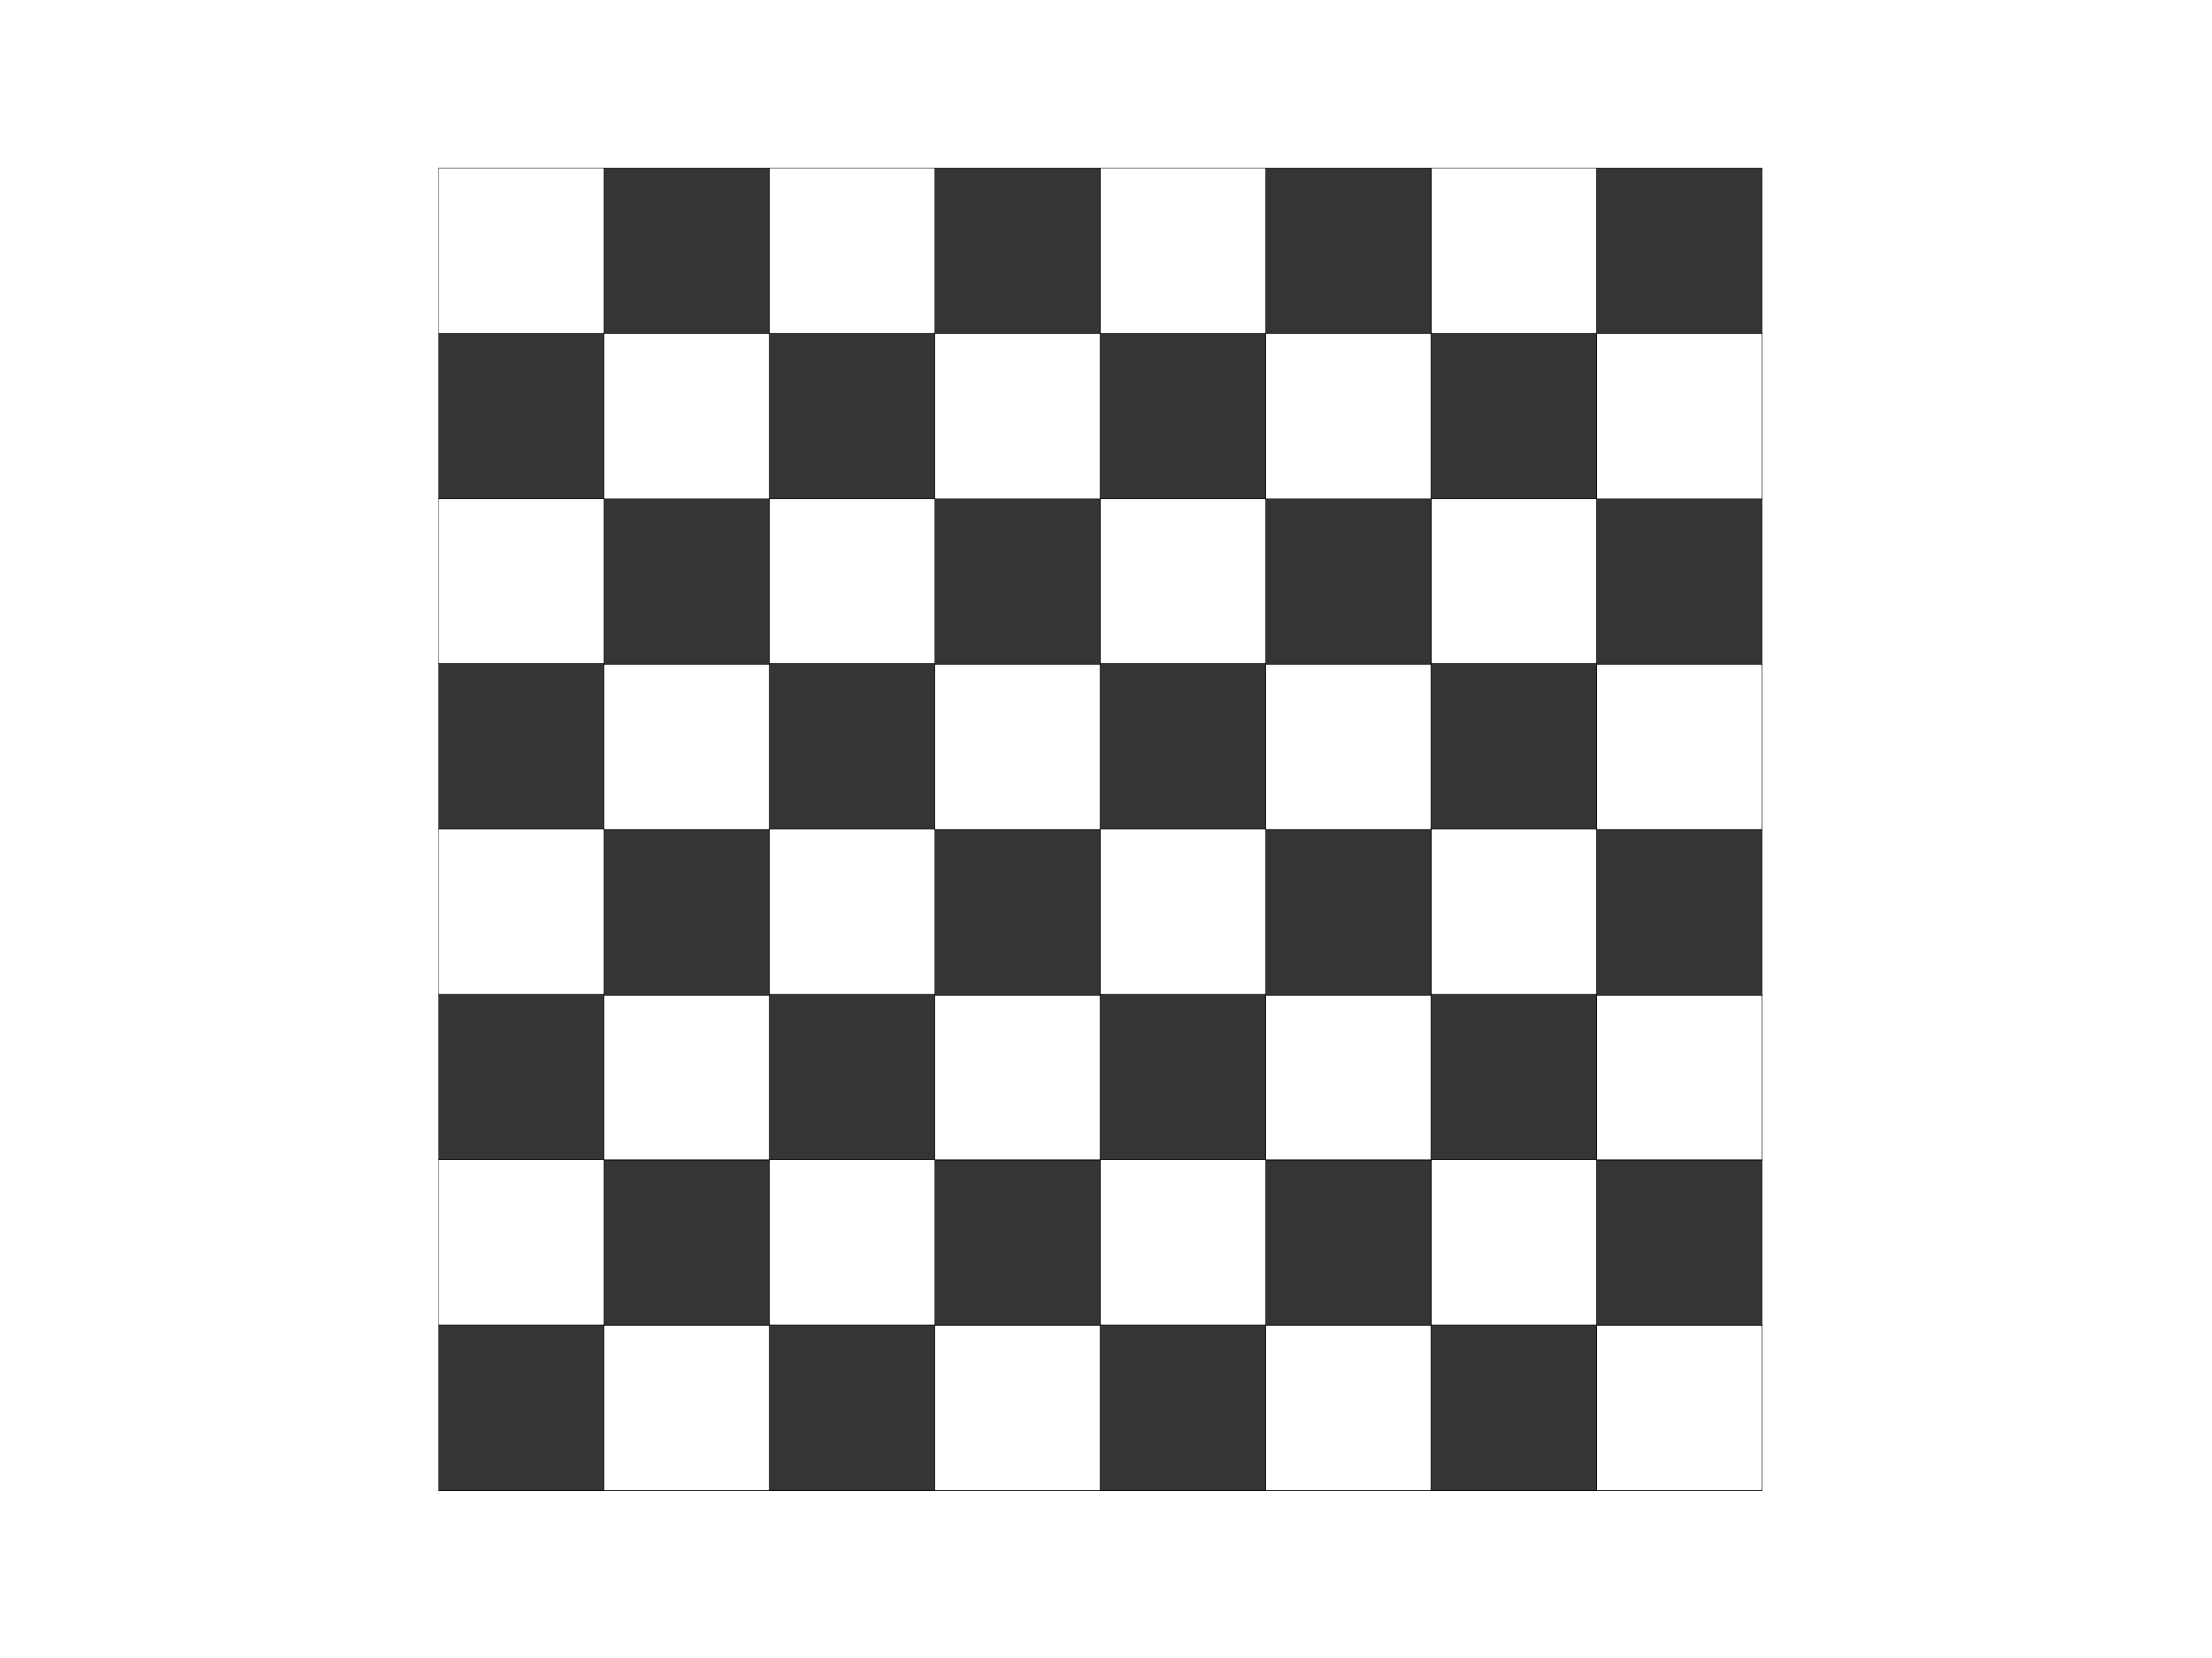 Шахматная доска 5 на 5. Шахматная доска. Шахматное поле для печати. Шашечная доска для печати. Макет шахматной доски для печати.